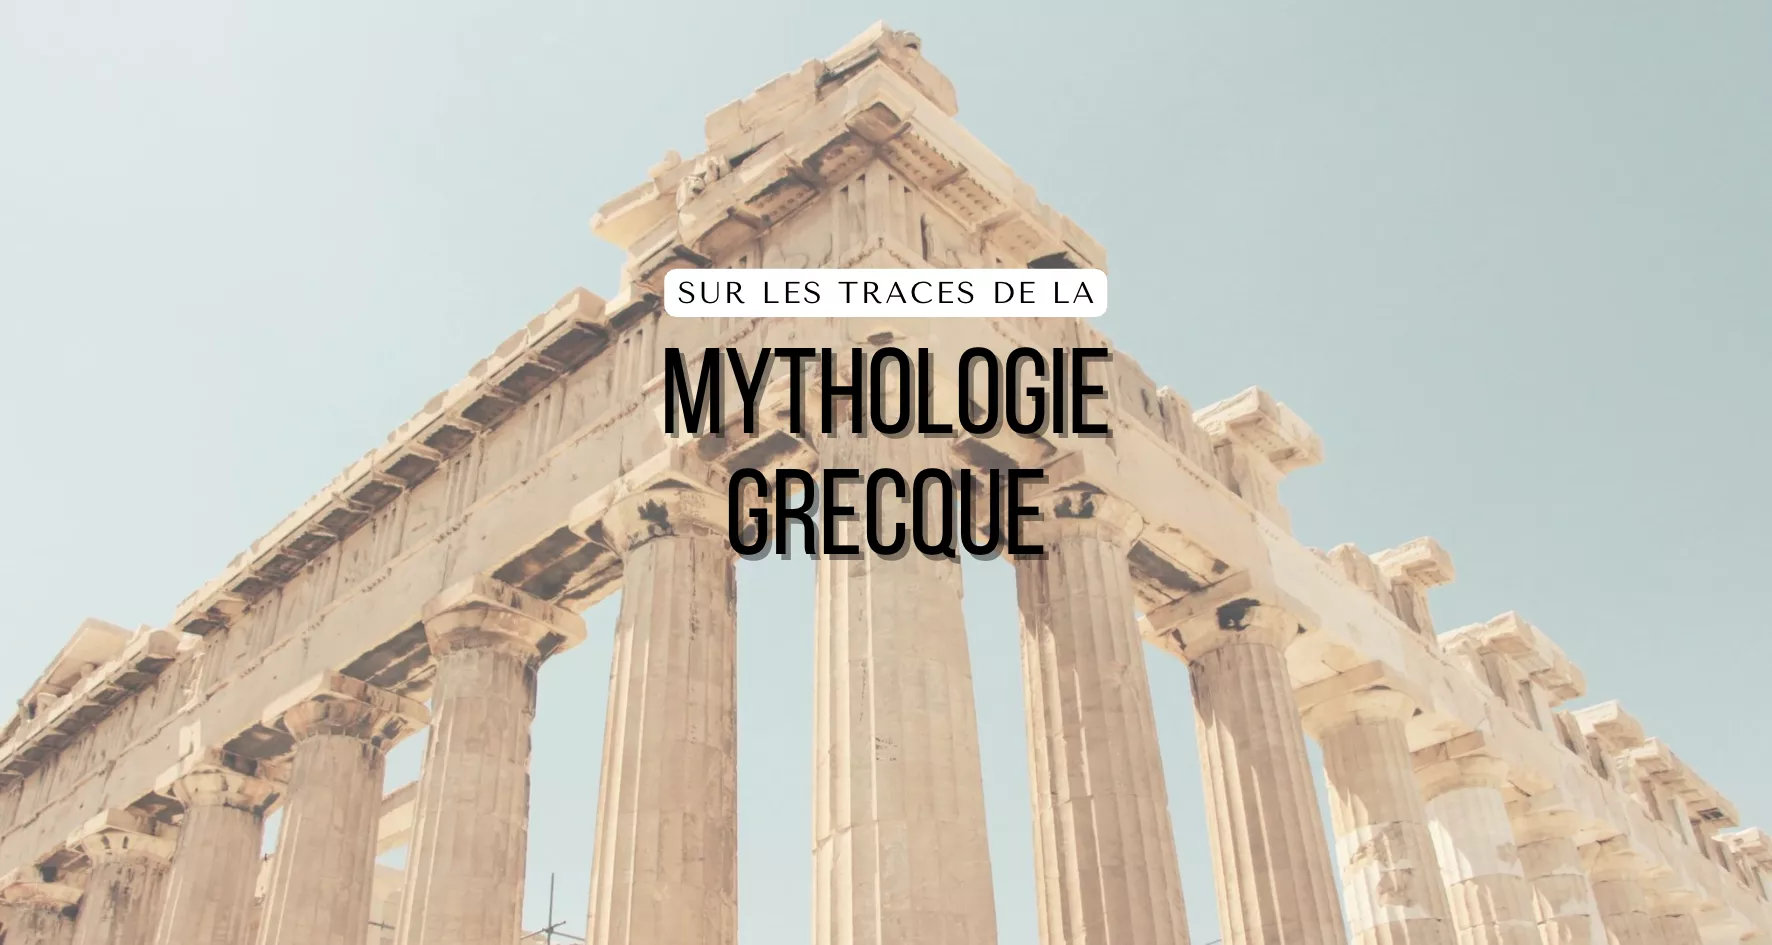 Main image of article: Périple dans le monde des mythes grecs